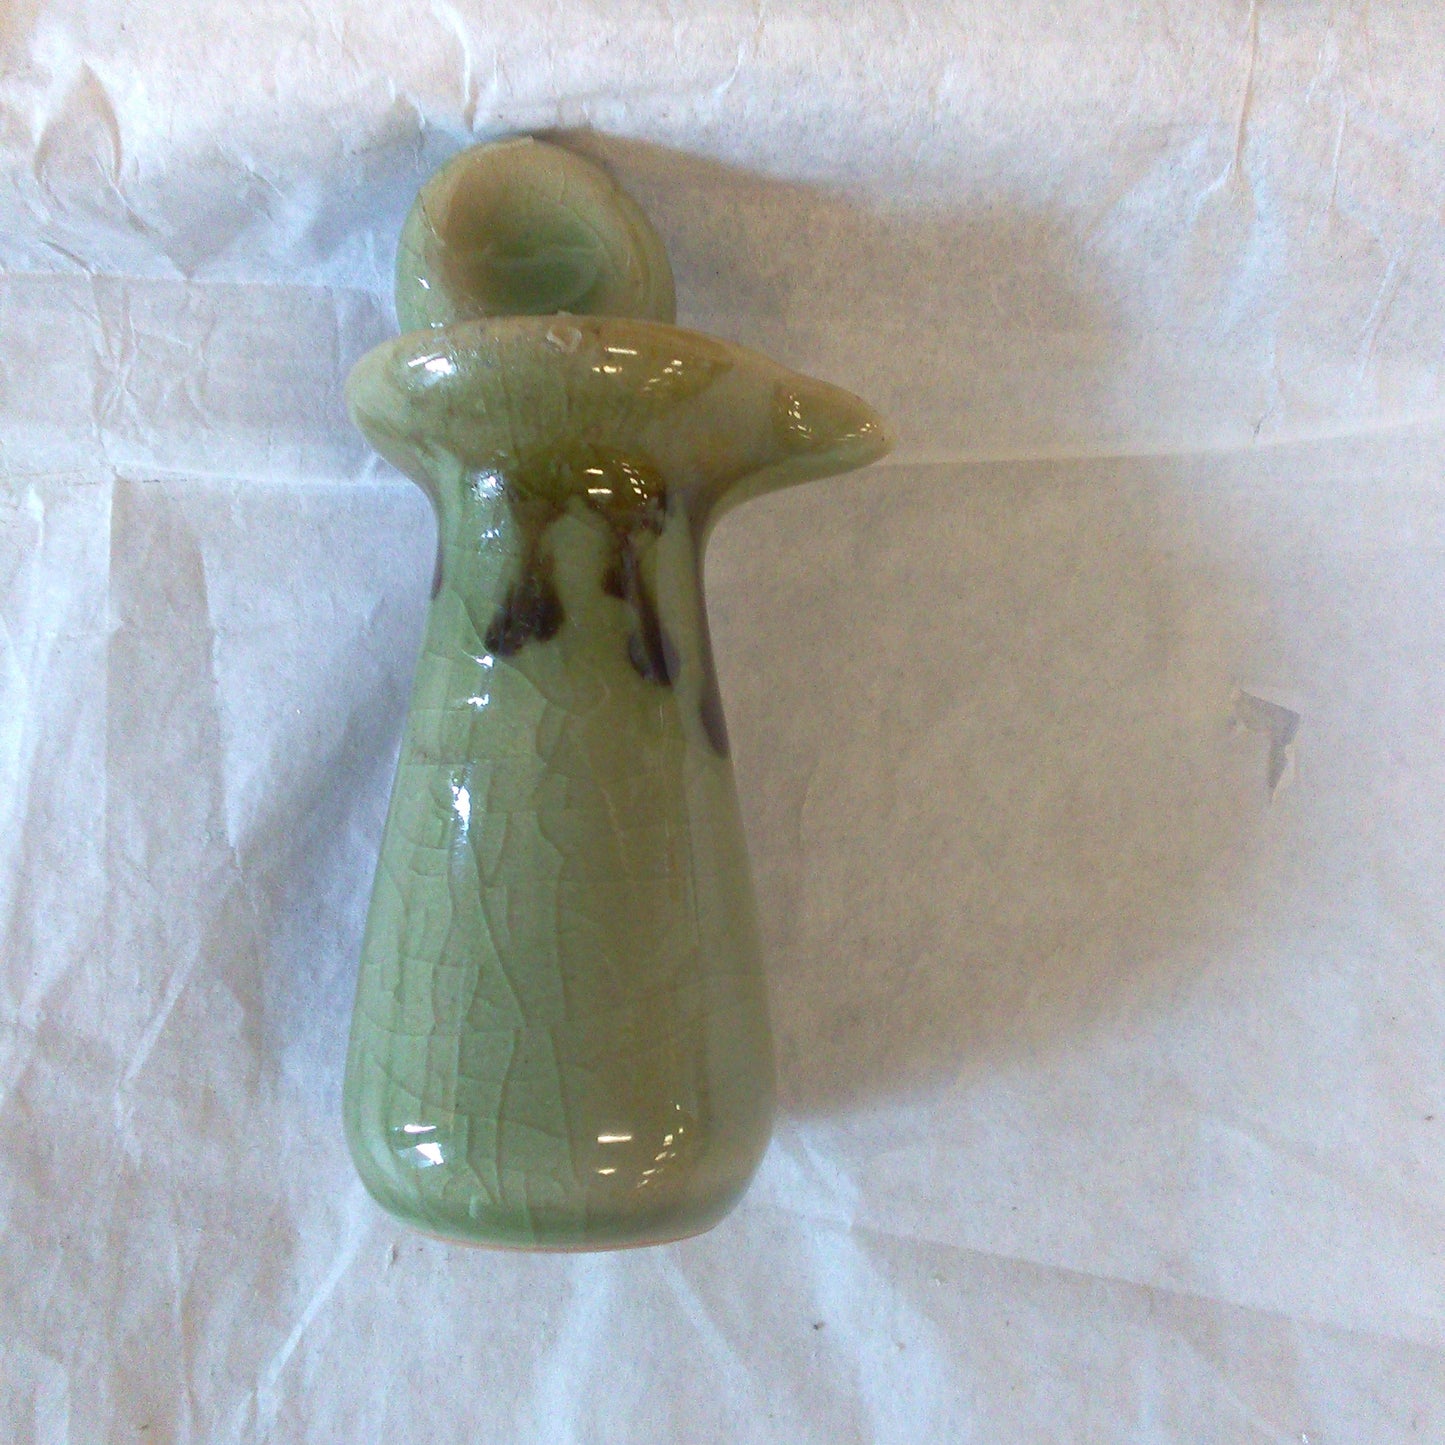 Ceramic oil bottle, small